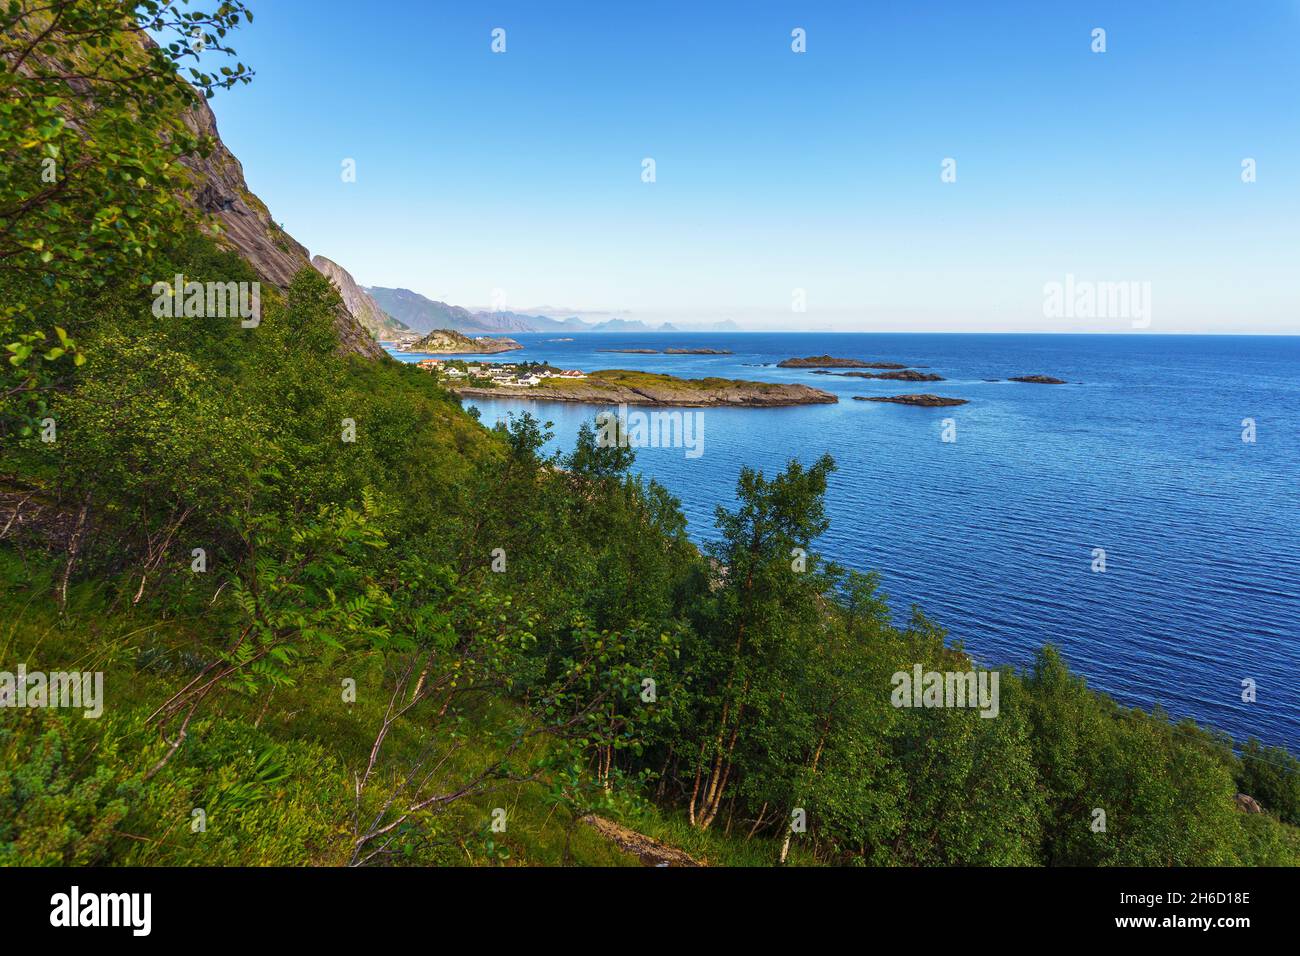 Vue panoramique sur l'océan Atlantique depuis le chemin menant au mont Reinebringen, dans le nord de la Norvège Banque D'Images